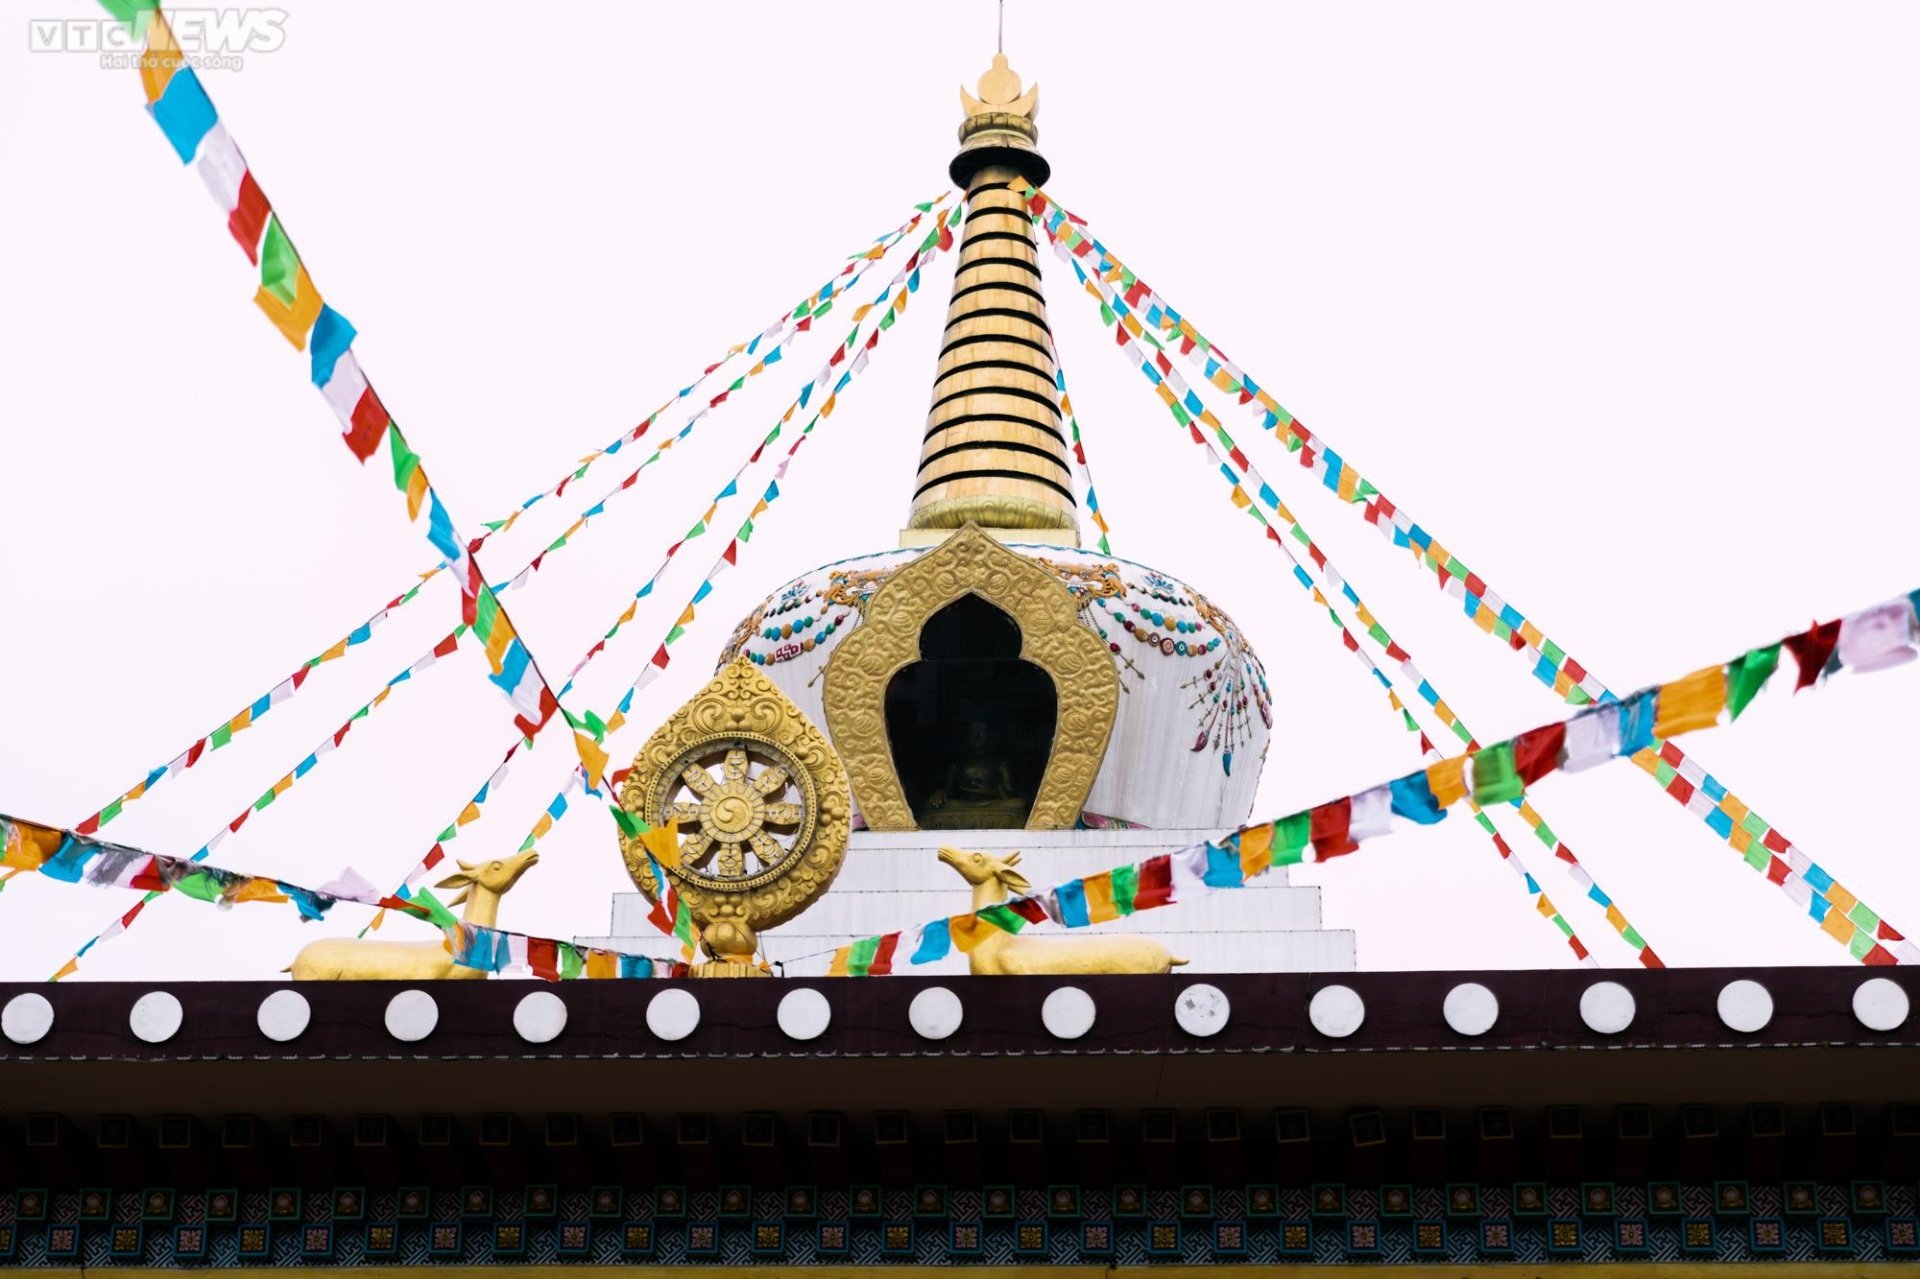 Chiêm ngưỡng ngôi chùa Tây Tạng 600 năm tuổi độc nhất tại Hà Nội - 5